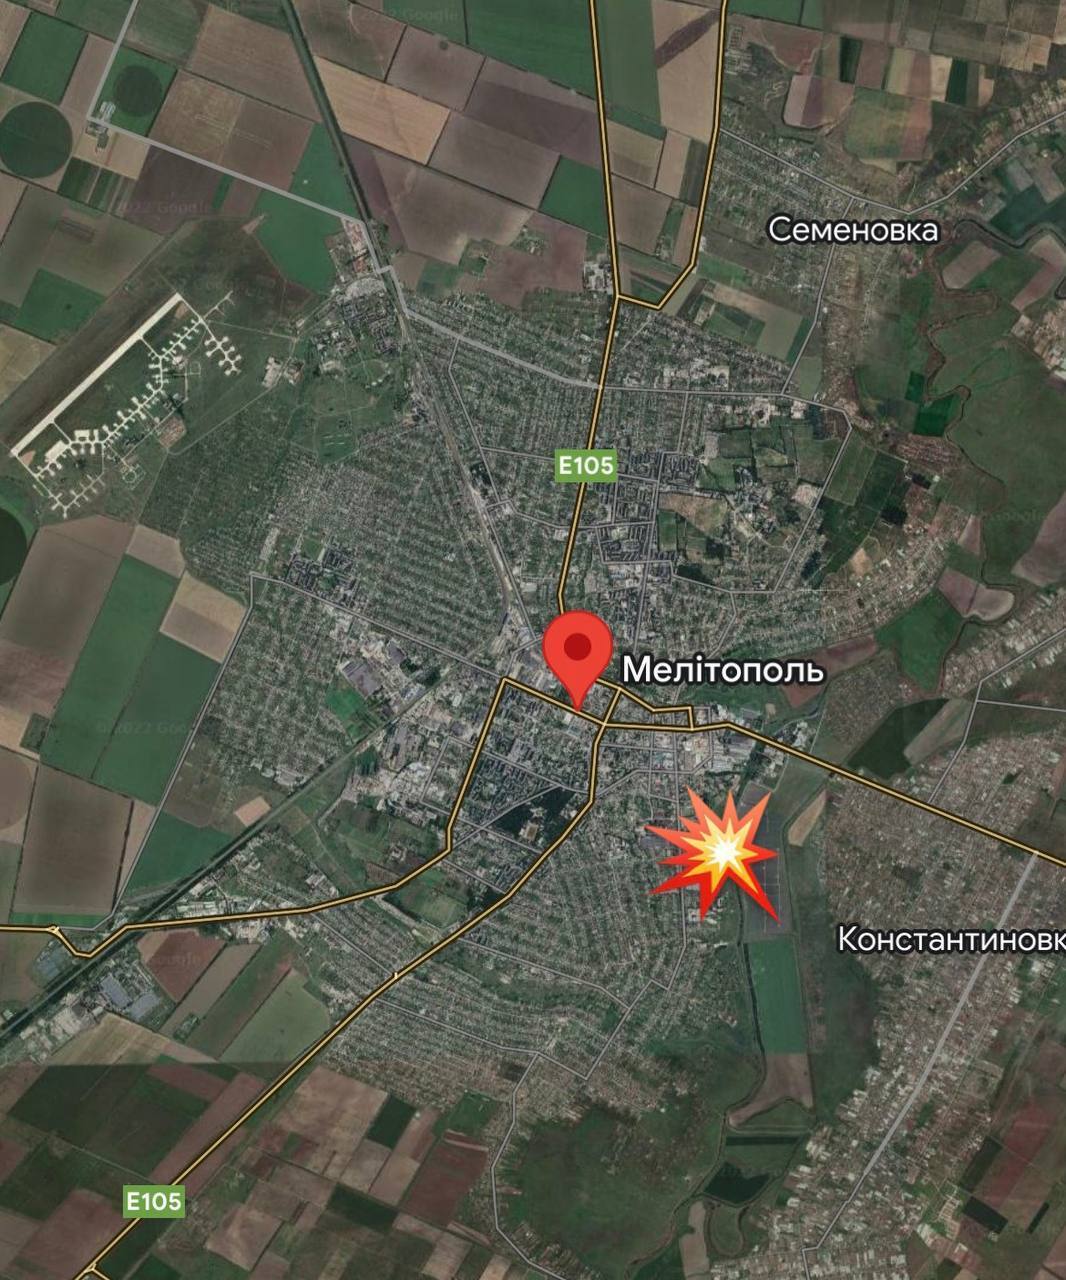 "Обломки разлетались на два квартала": ВСУ нанесли мощный удар по оккупантам в Мелитополе, всплыли детали. Фото